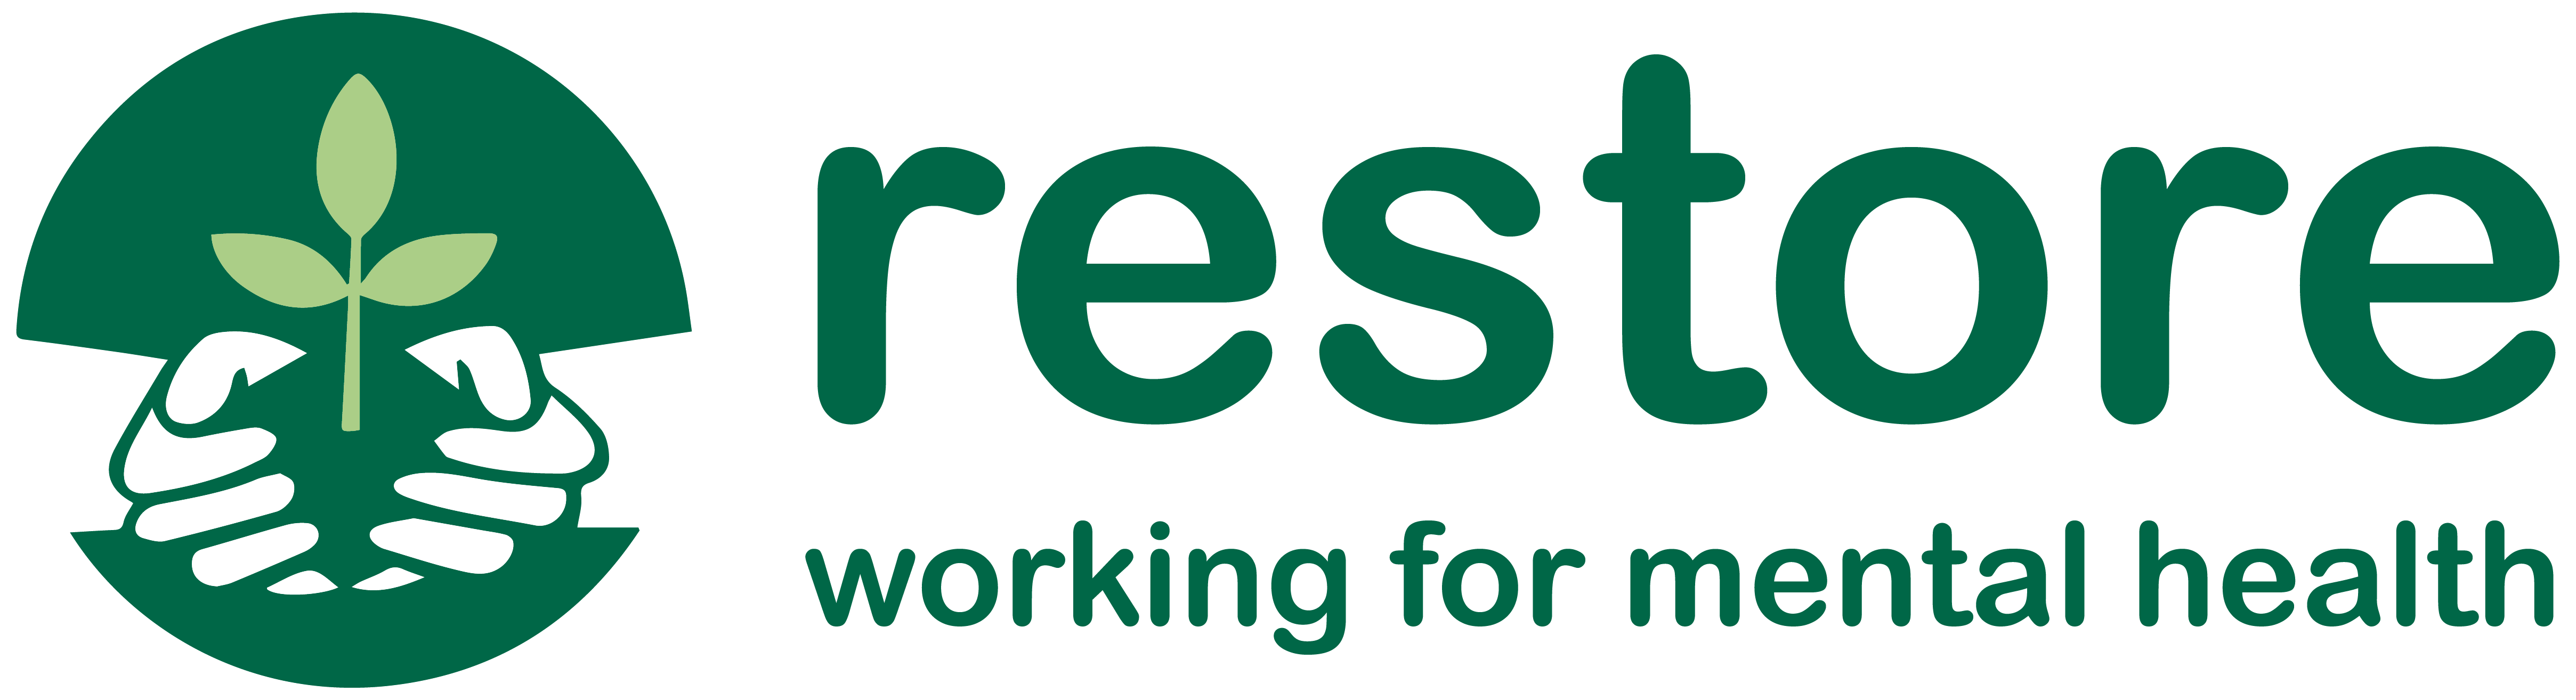 Restore logo landscape 2 colour